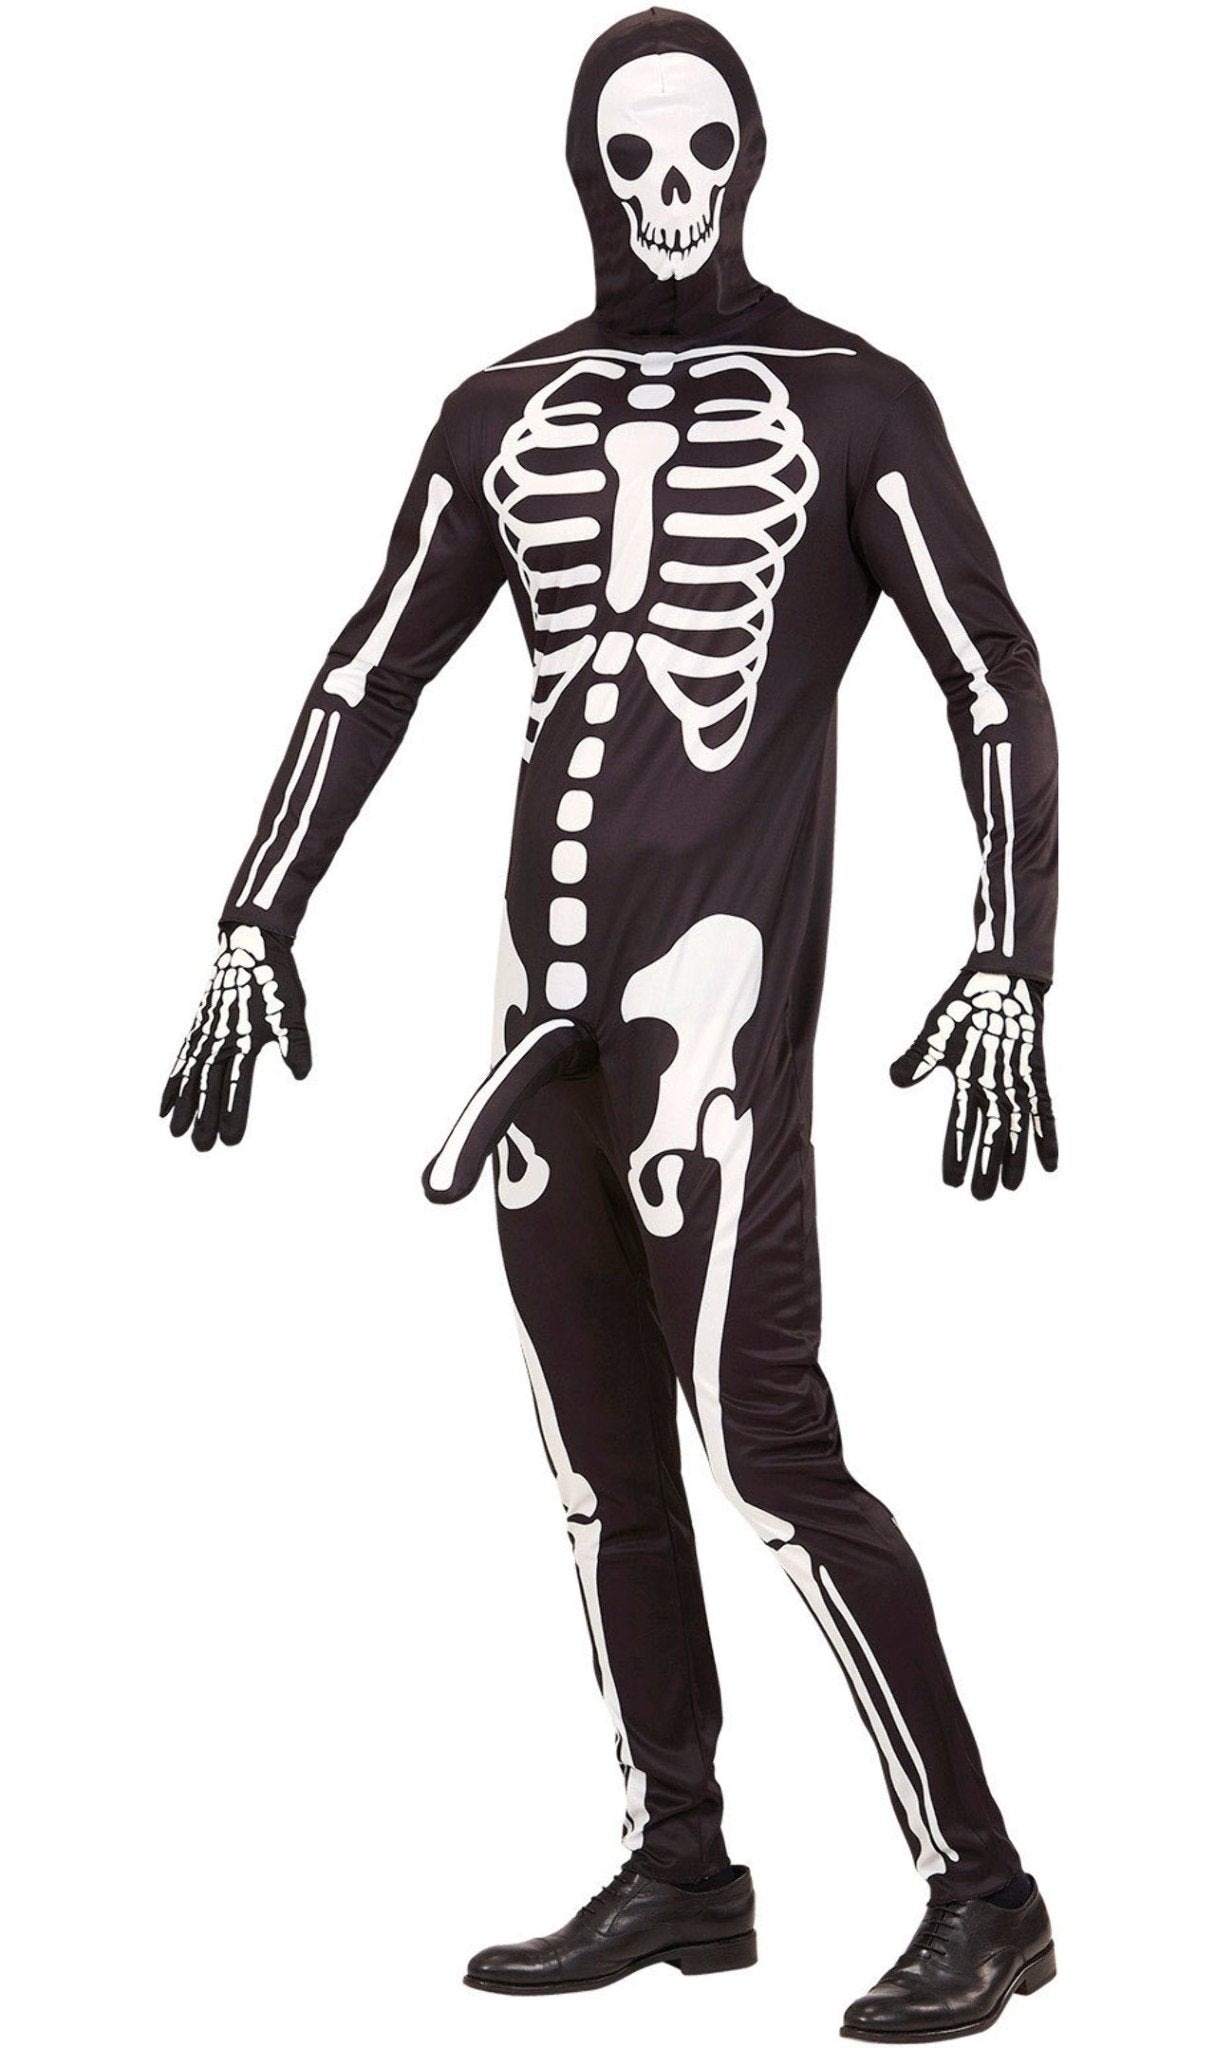 L'image De L'homme S'est Habillée Dans Le Costume De Squelette De Carnaval  Image stock - Image du mode, beau: 43304091